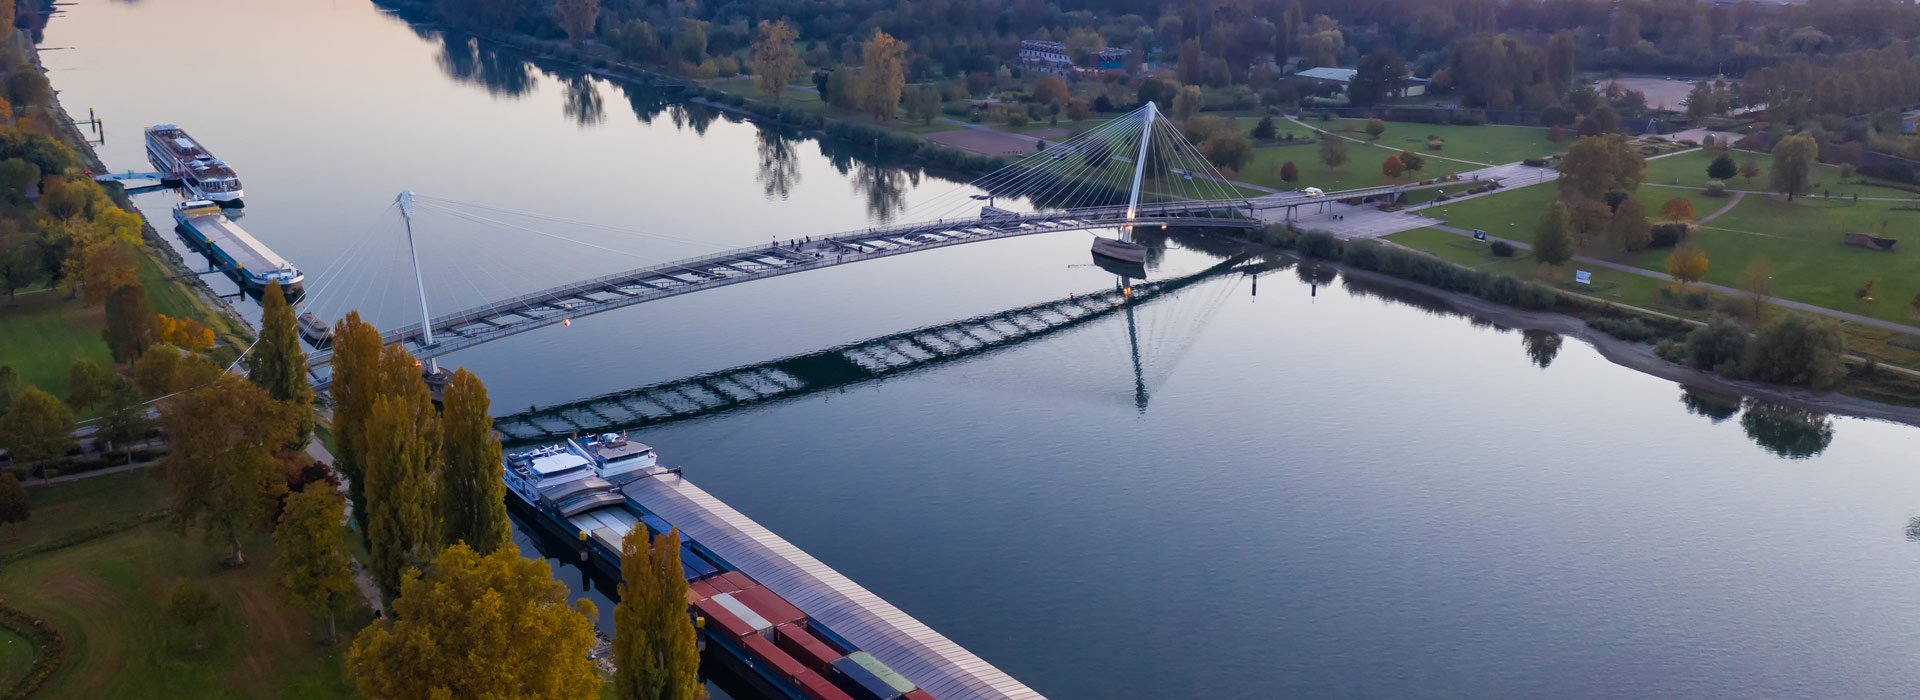 Barge auf dem Rhein bei der Brücke in Kehl